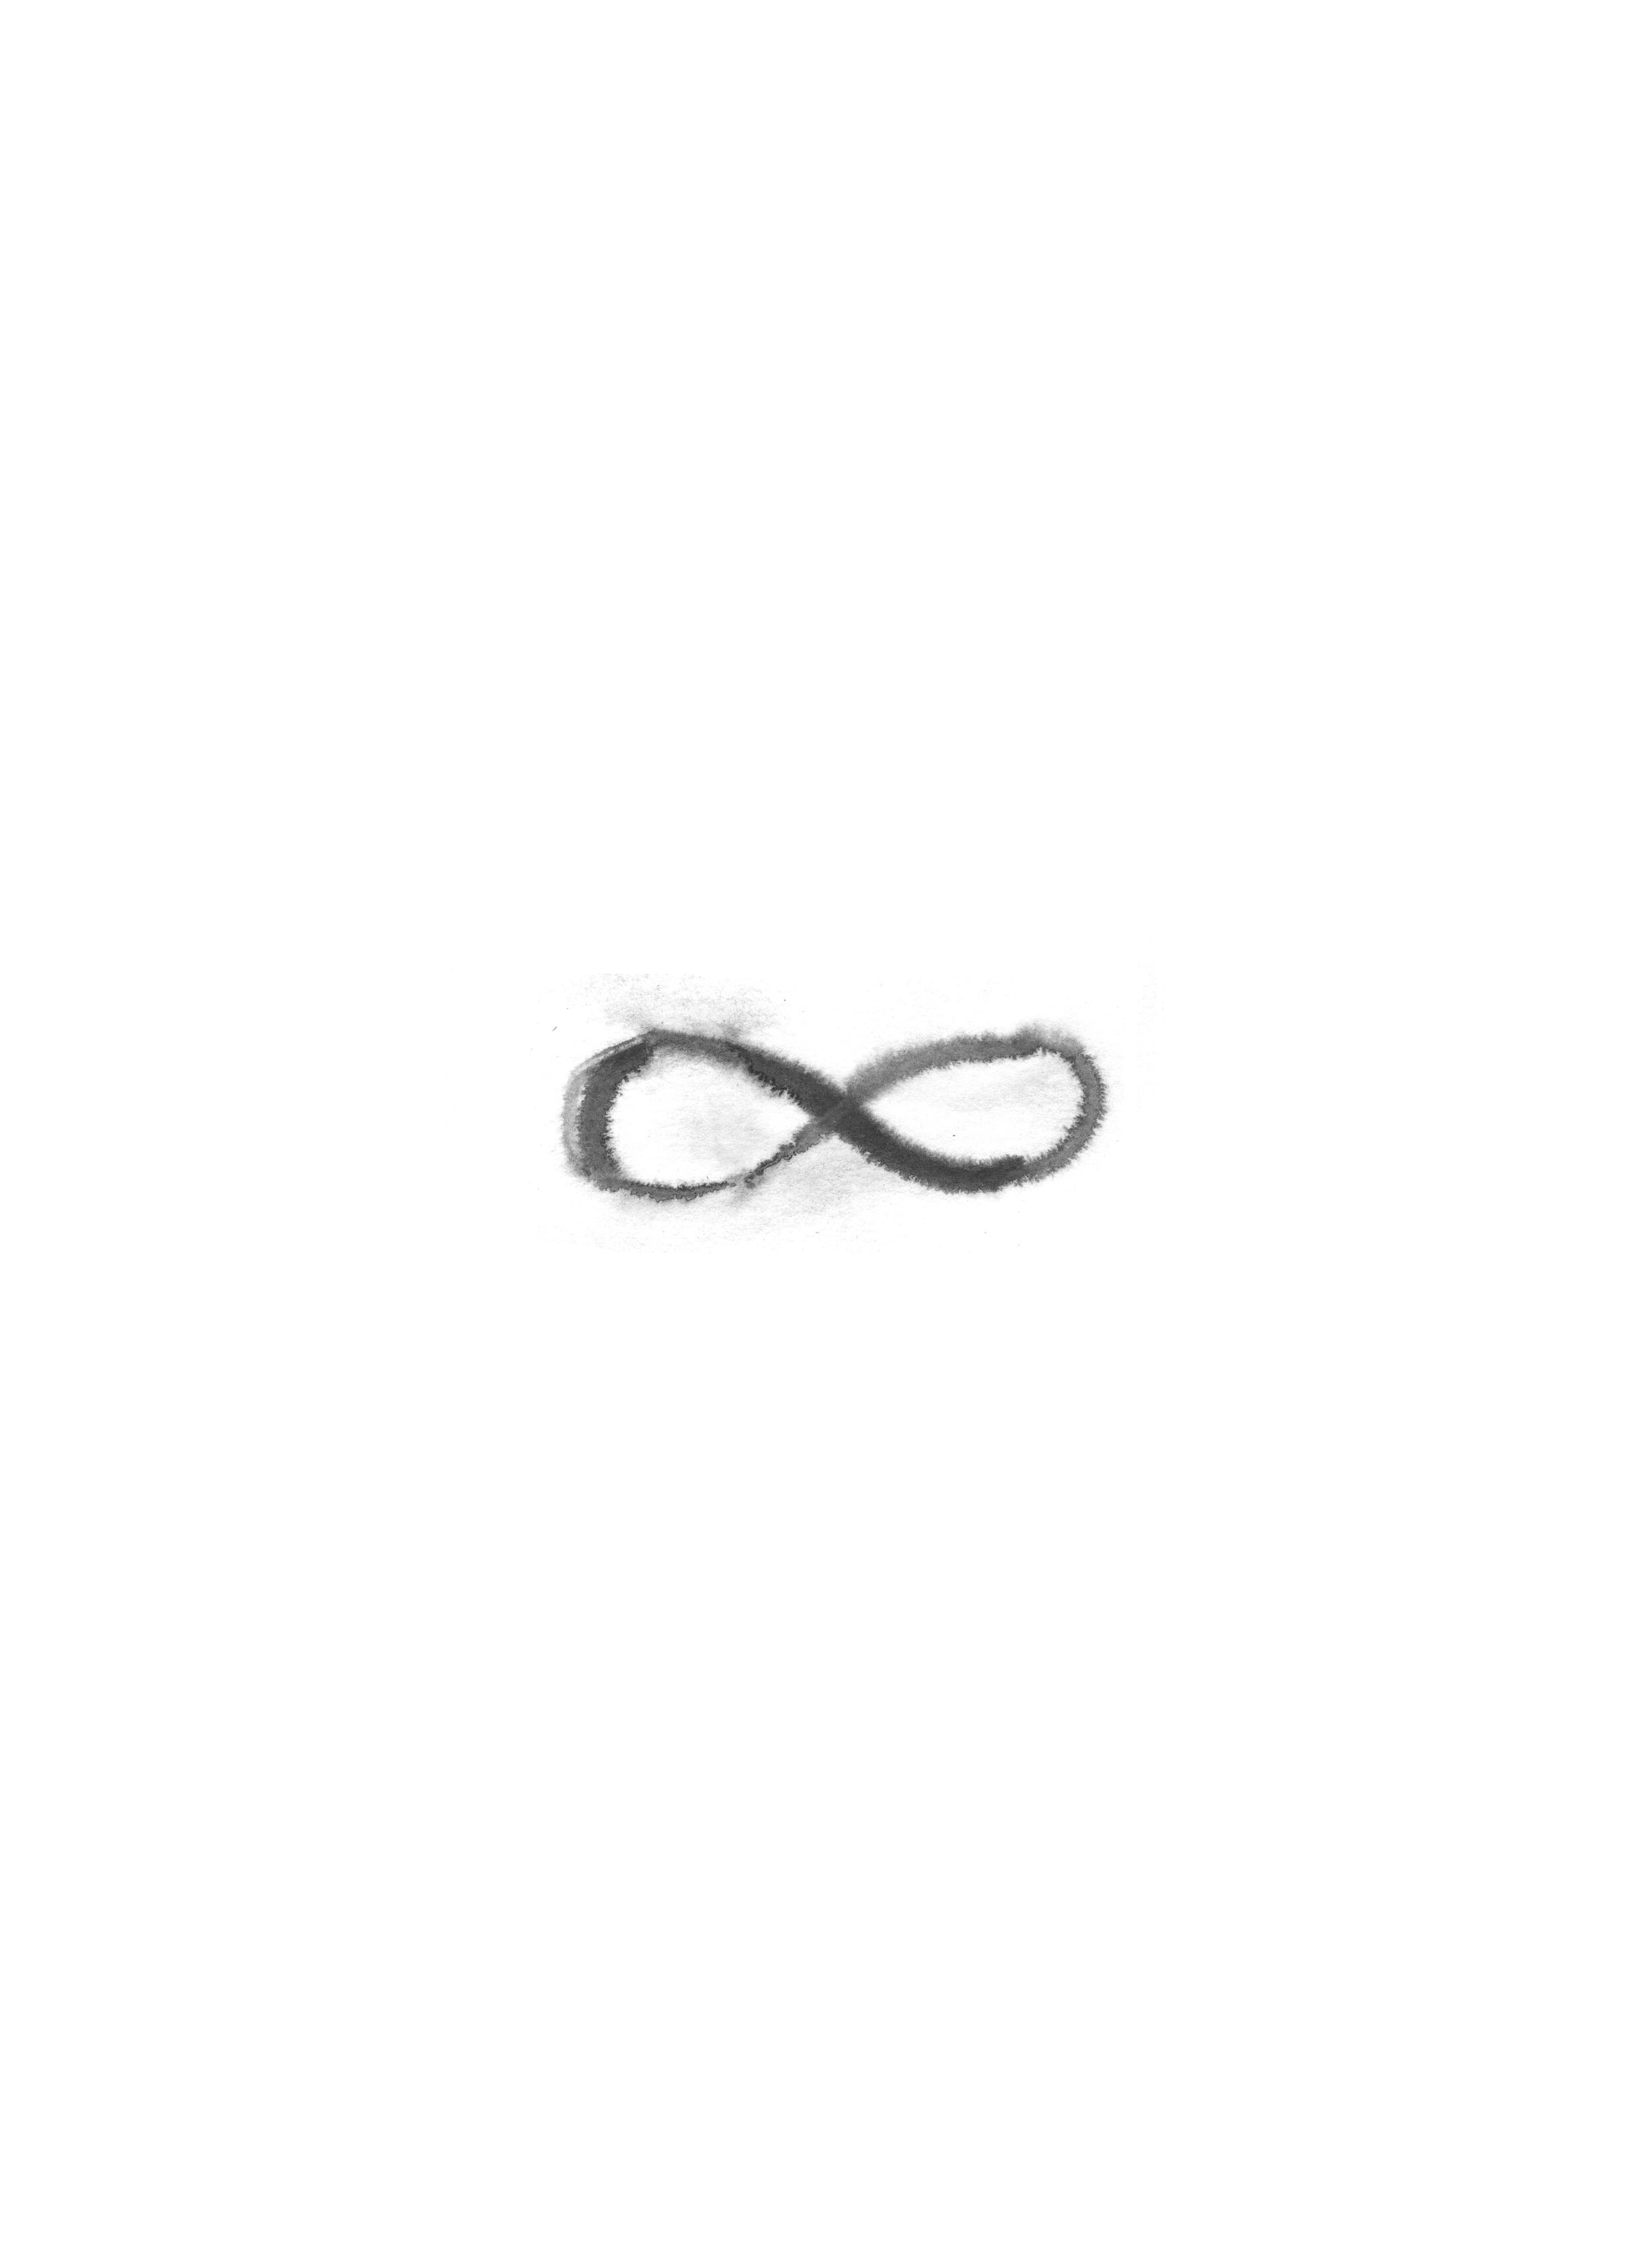 infinitysign.jpg